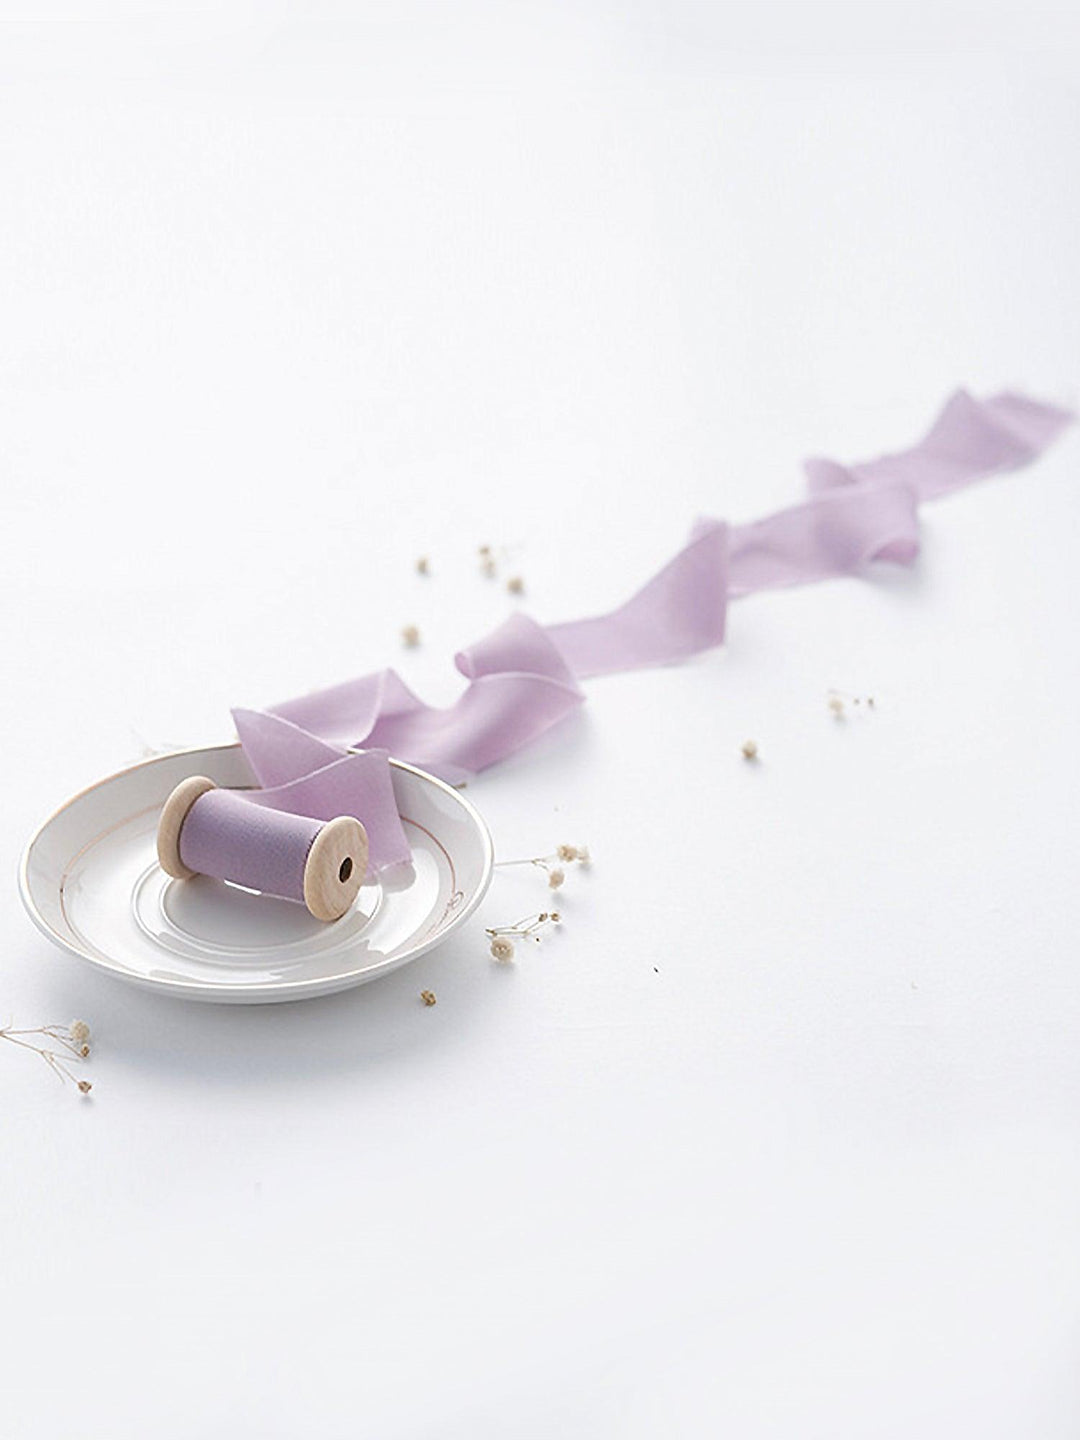 1.2Yd Chiffon Ribbon - Pastel Purple